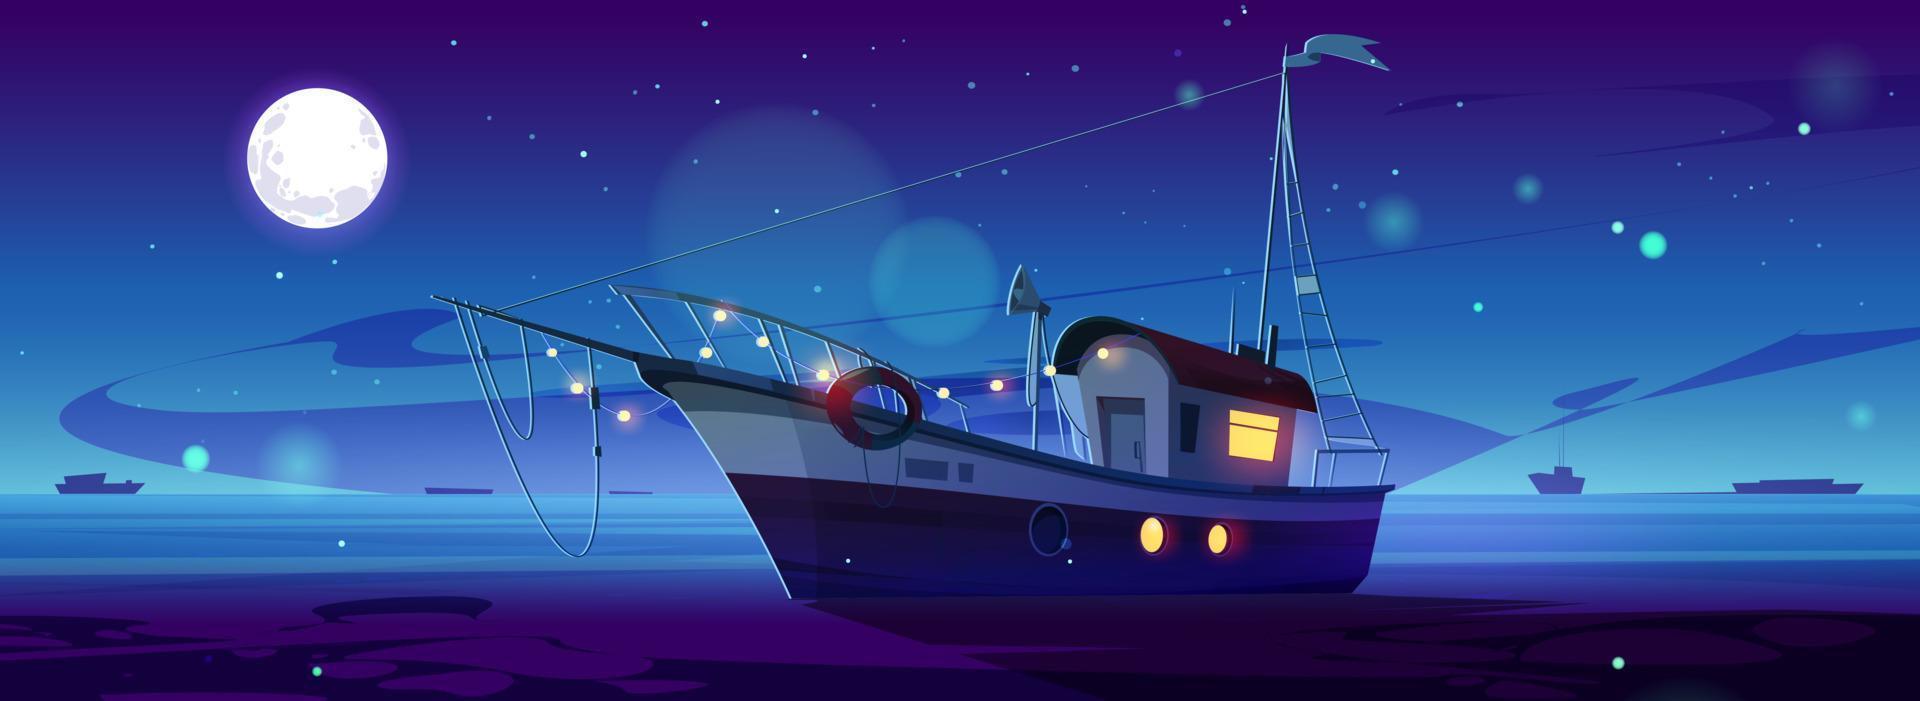 dessin animé yacht flottant dans nuit mer vecteur